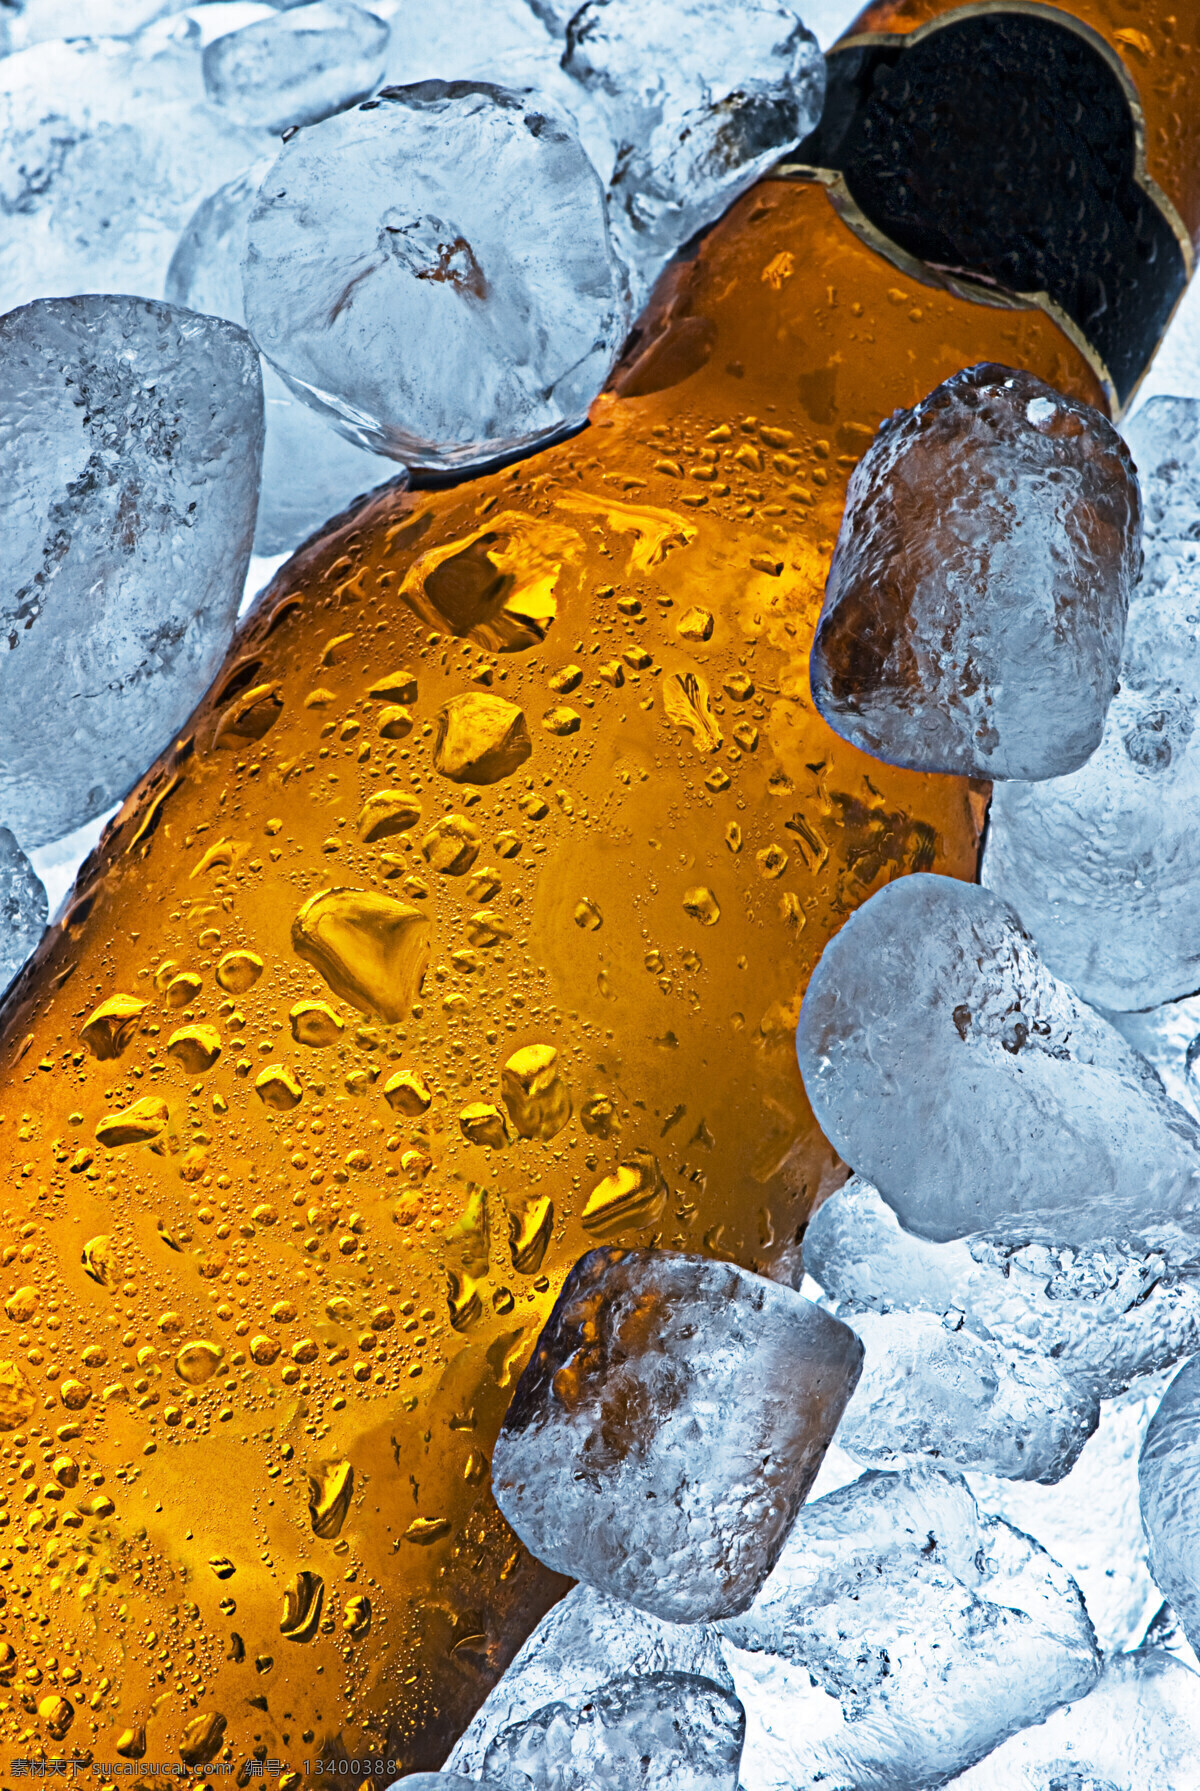 冰块 堆 里 瓶 啤酒 瓶子 冷饮 一瓶 一瓶子 玻璃瓶 水珠 饮料 许多冰块 冰块堆 黄色瓶子 高清图片 酒类图片 餐饮美食